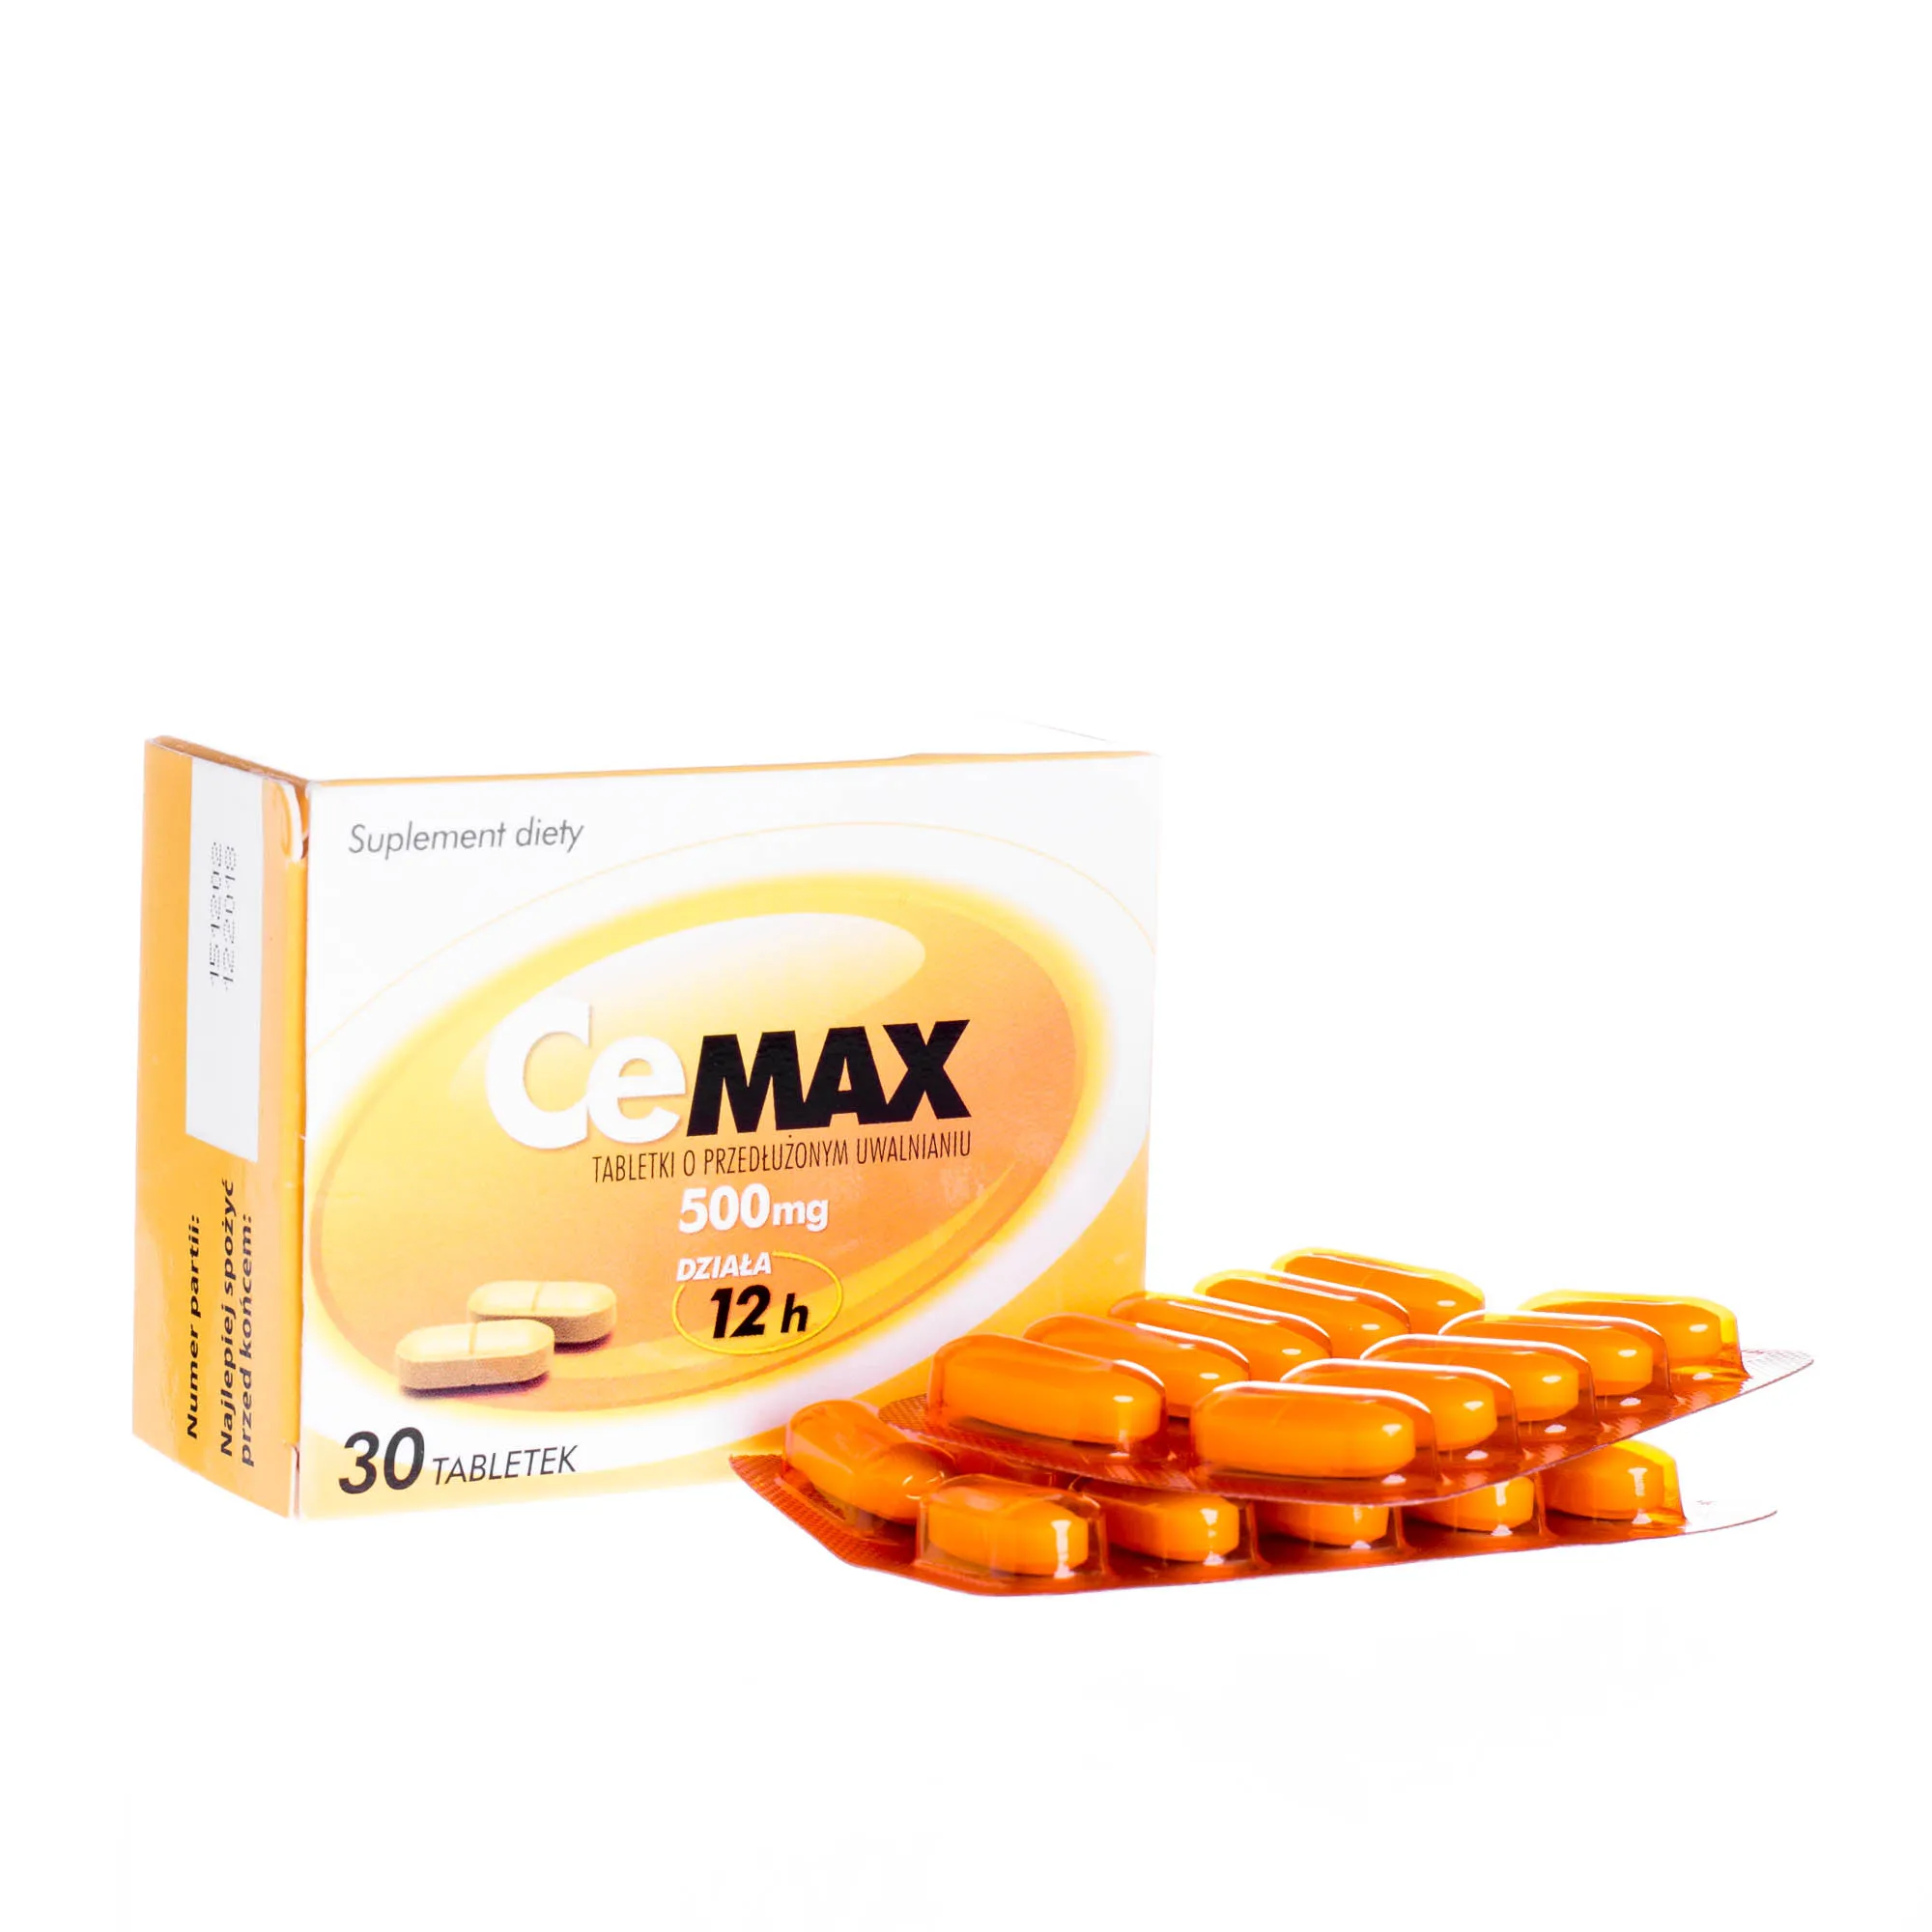 Cemax 500 mg, tabletki o przedłużonym uwalnianiu, 30 sztuk 